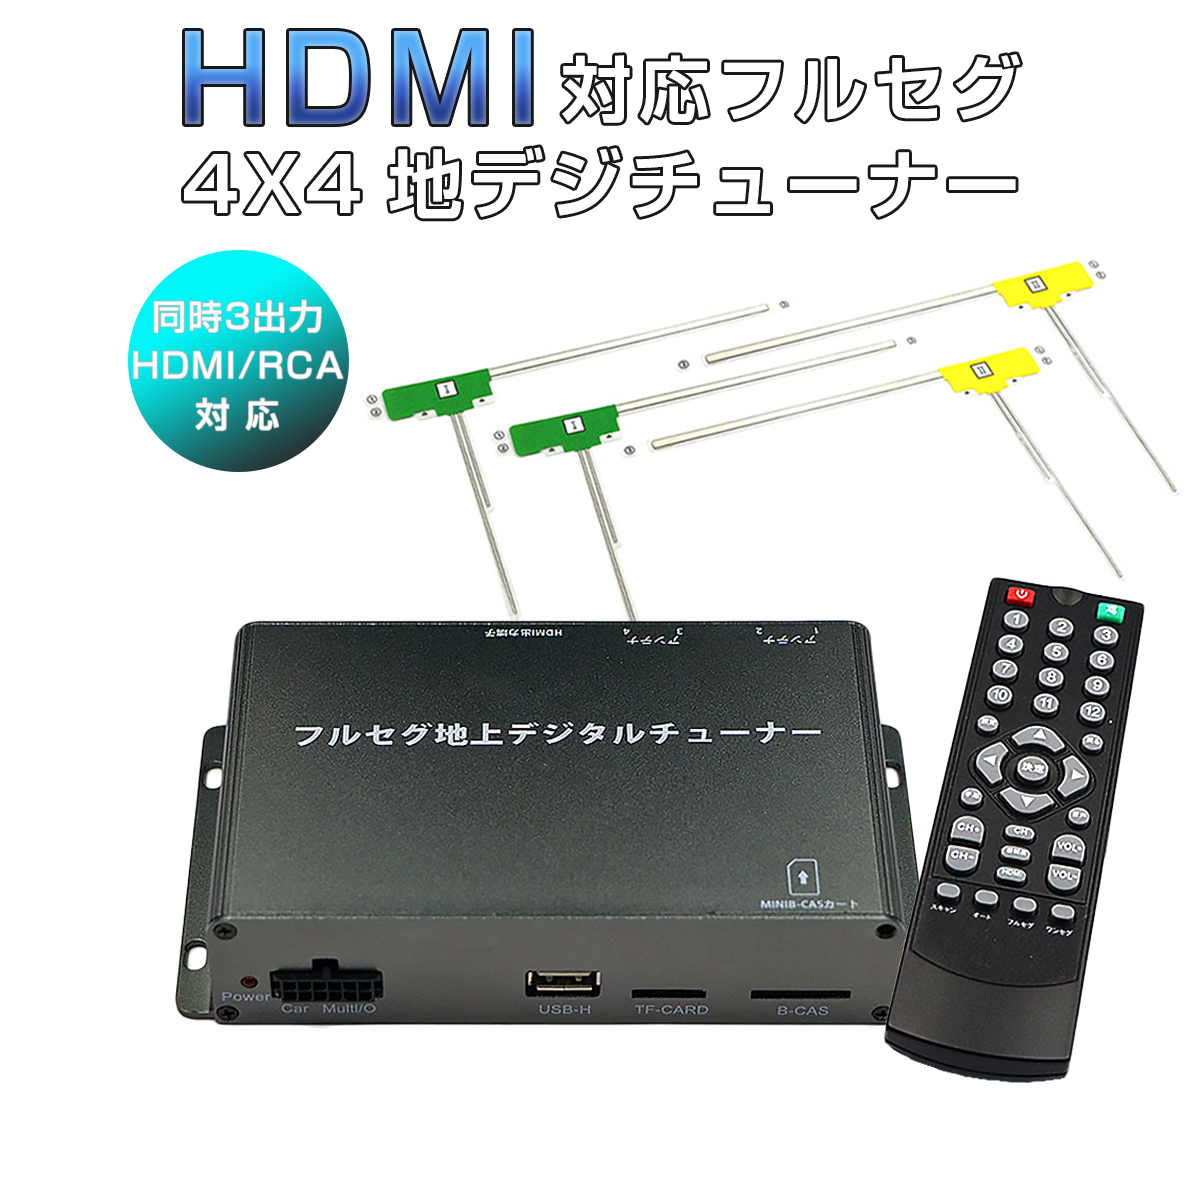 地デジチューナー フルセグ ワンセグ HDMI 4x4 高性能 4チューナー 4アンテナ 自動切換 150km/hまで受信 高画質 古い車載TVやカーナビにも使える 12V/24V フィルムアンテナ miniB-CASカード付き 宅配便送料無料 6ヶ月保証